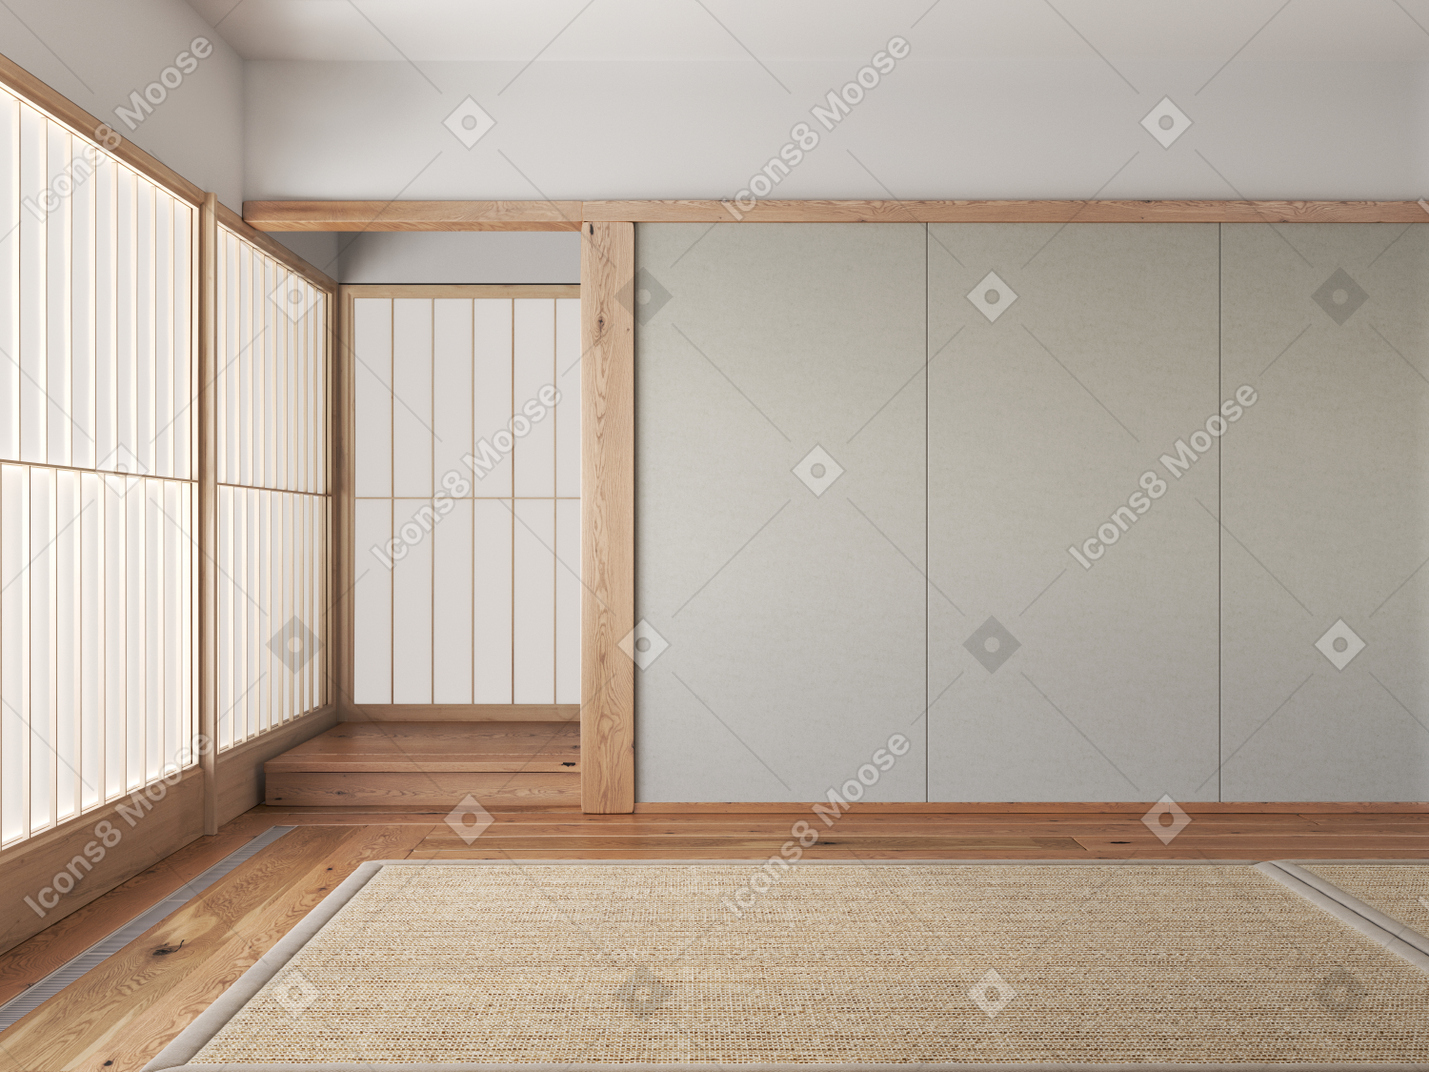 다다미 매트와 쇼지 룸 칸막이가 있는 일본 전통 인테리어